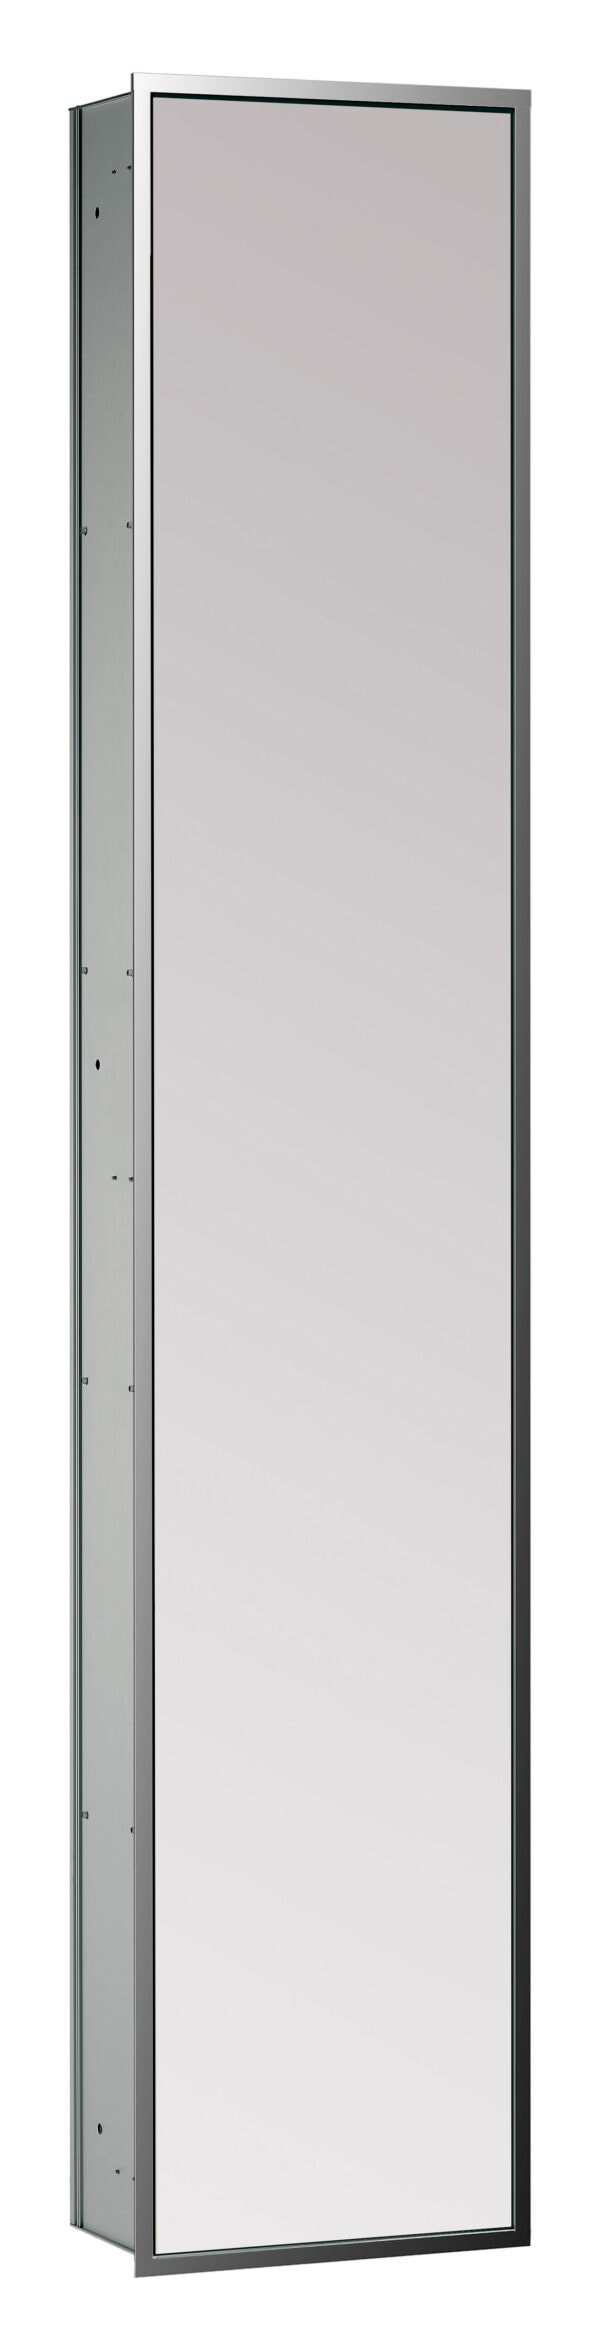 emco asis 300 Kastmodule met spiegeldeur - inbouwmodel - chroom/spiegel, 314 mm